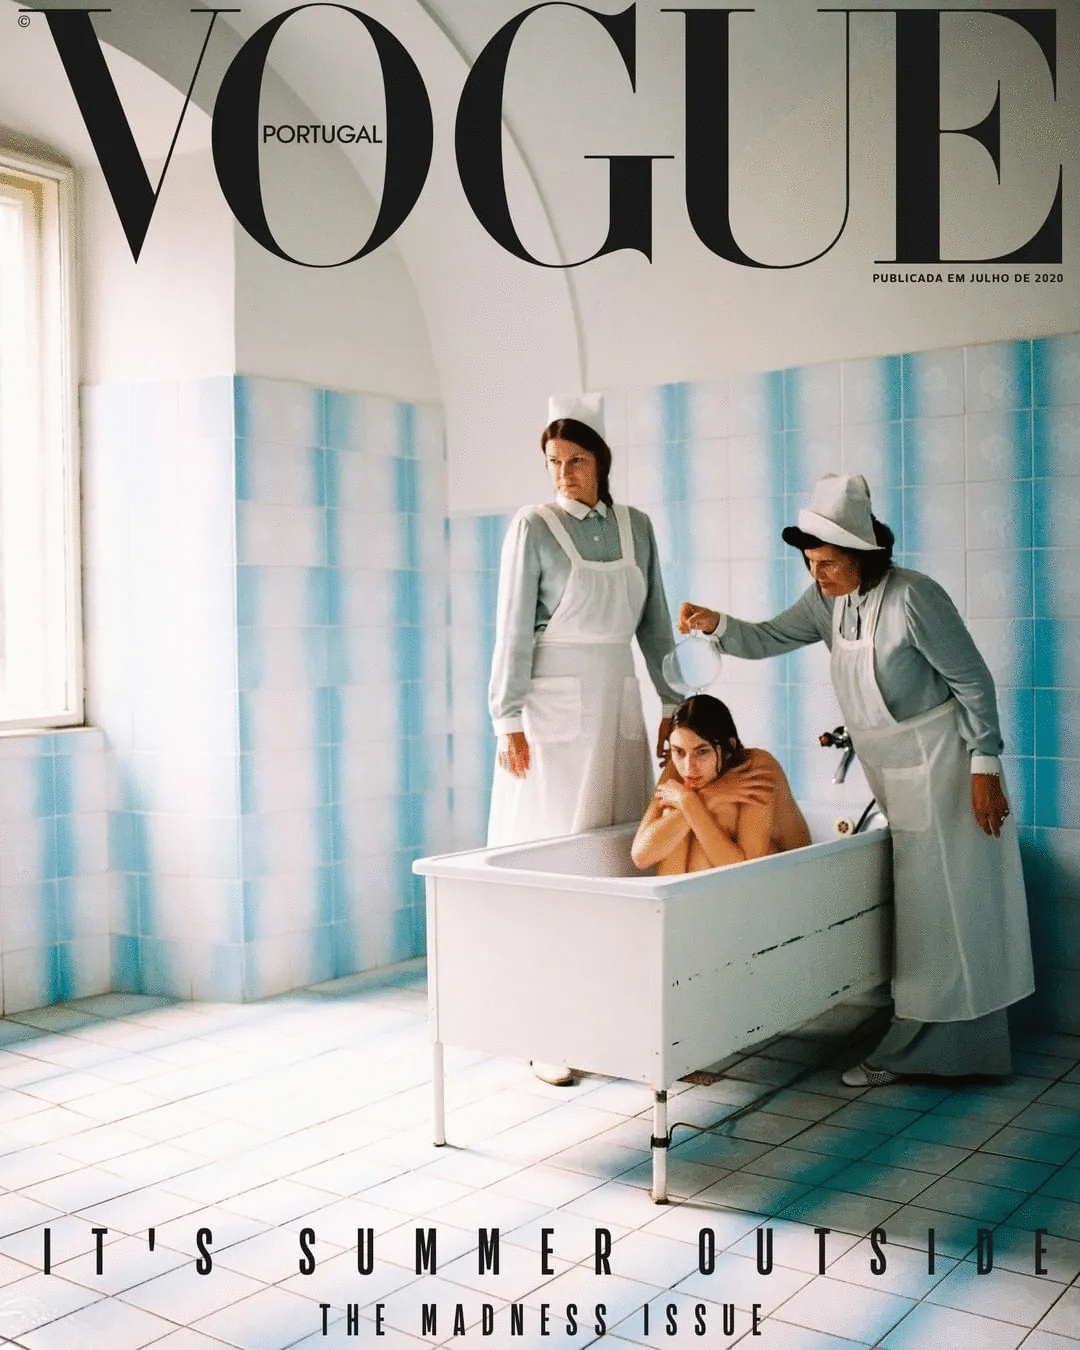 葡萄牙版Vogue封面引争议 被批评“将精神病塑造成美学”